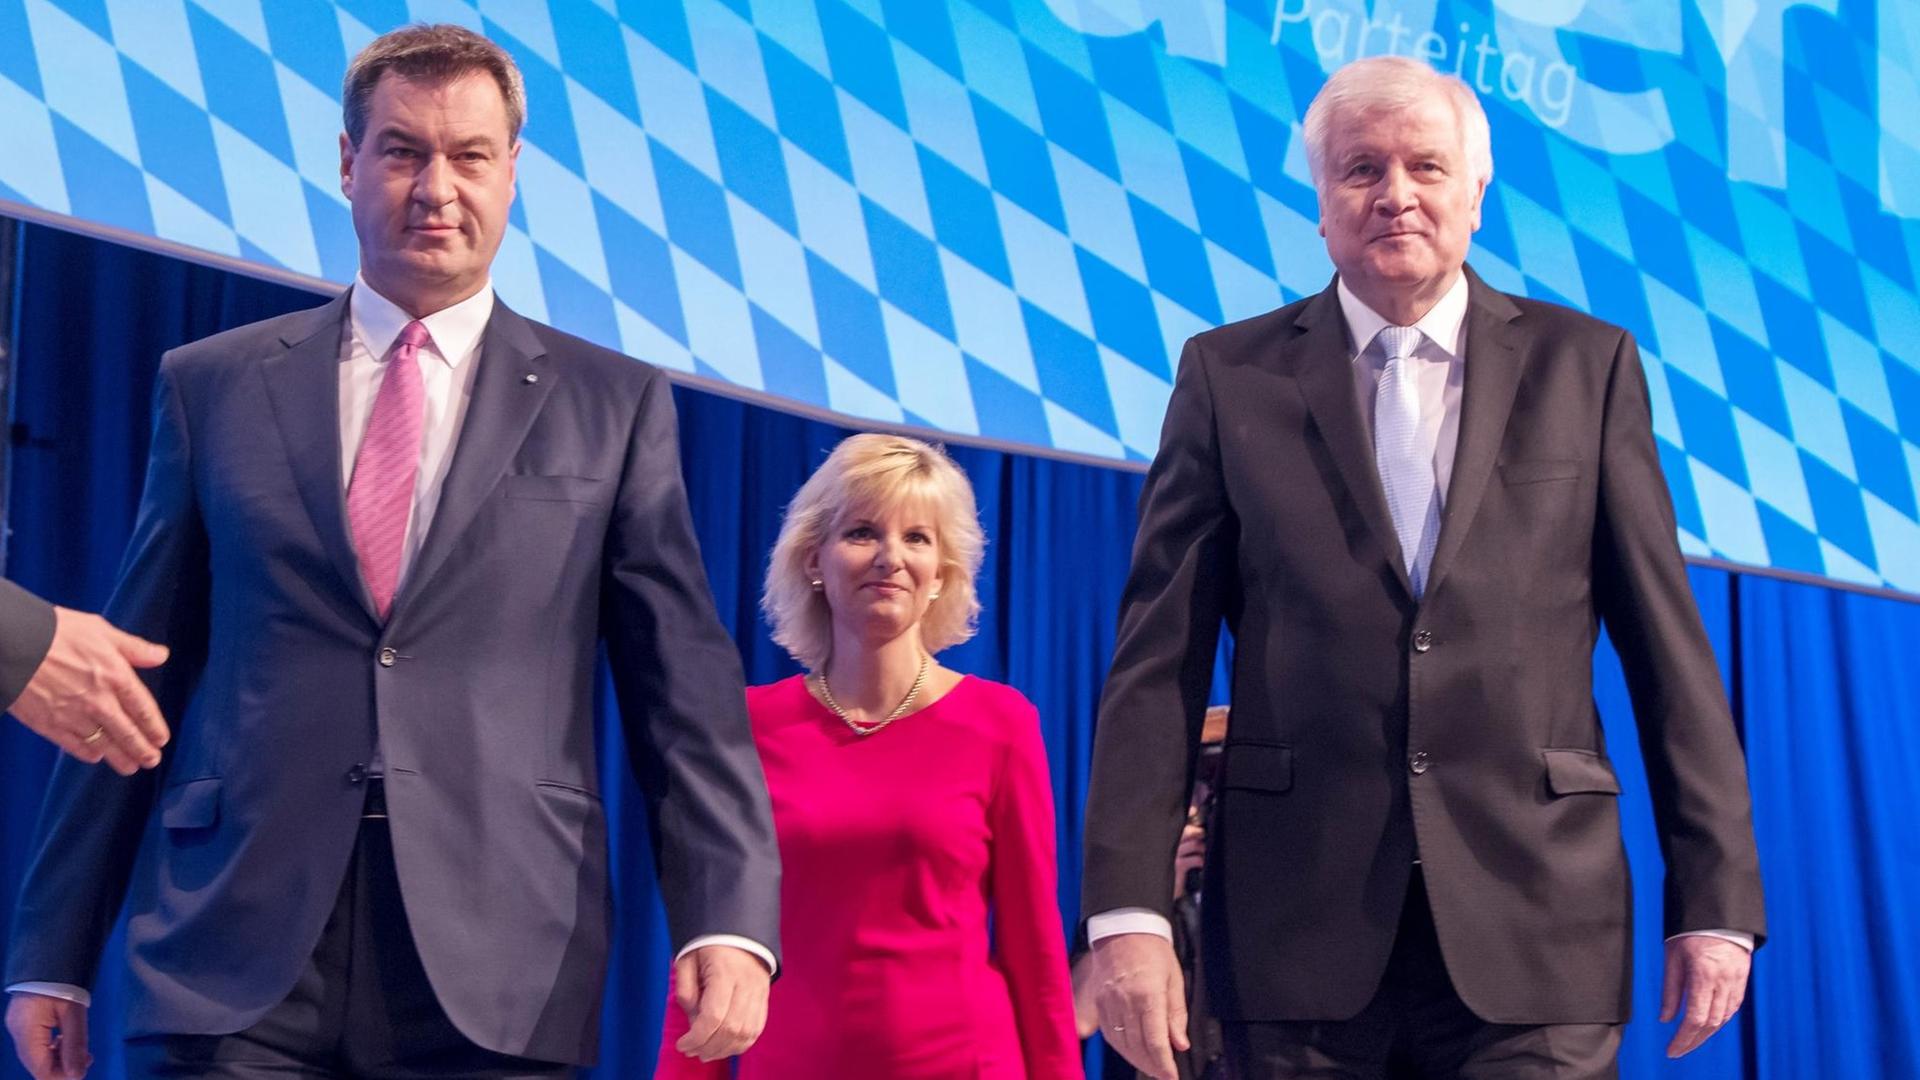 Bayerns Ministerpräsident Markus Söder, die stellvertretende CSU-Generalsekretärin Daniela Ludwig und Bundesinnenminister Horst Seehofer.